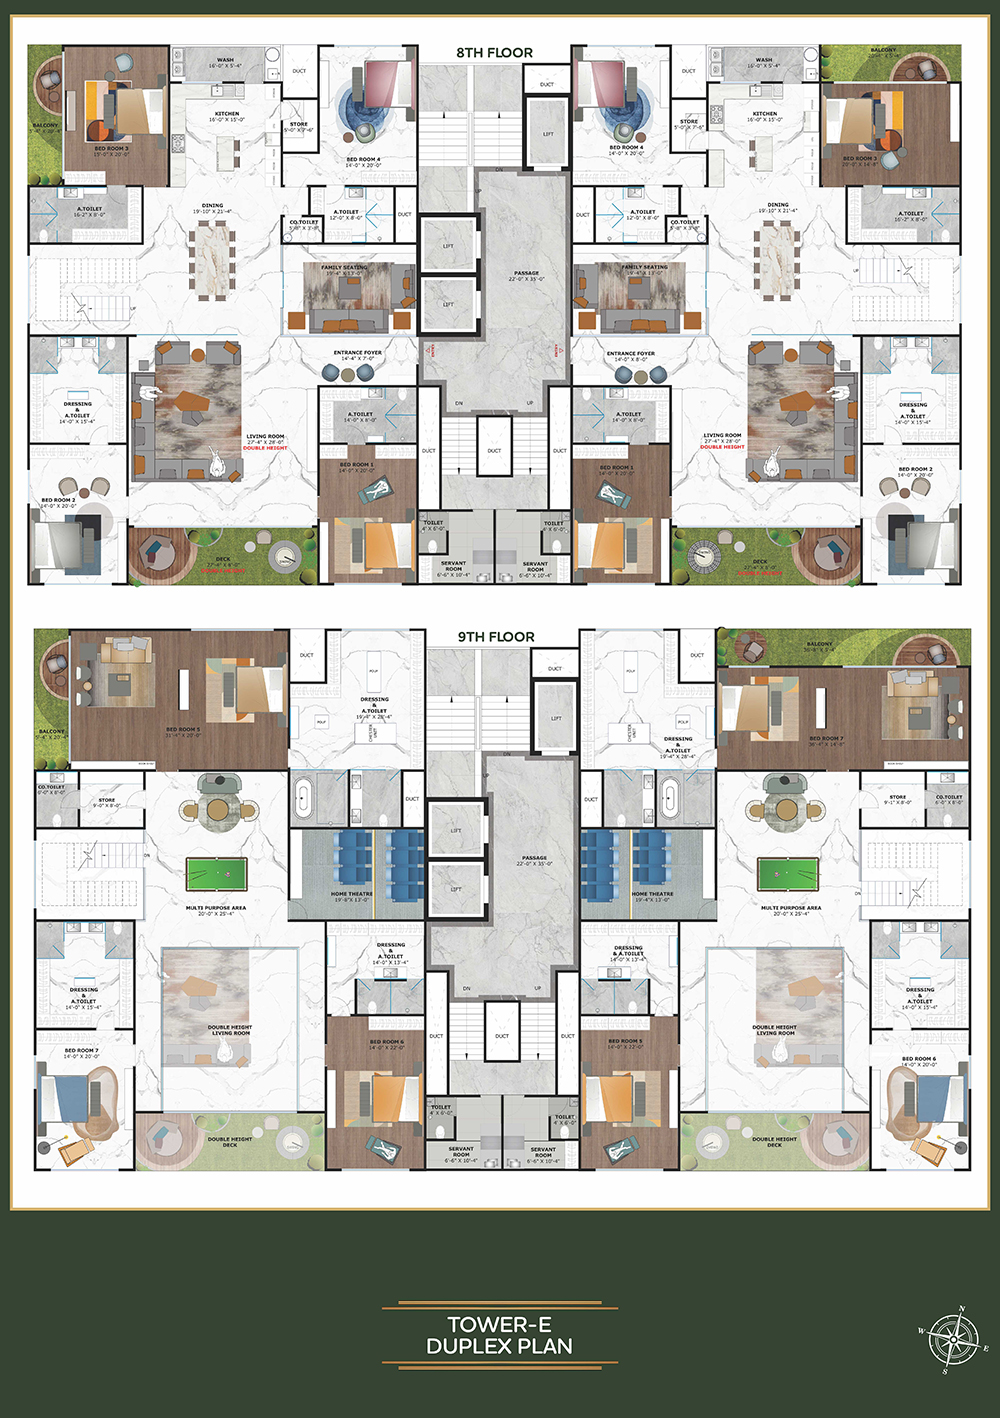 Tower E - Duplex Plan